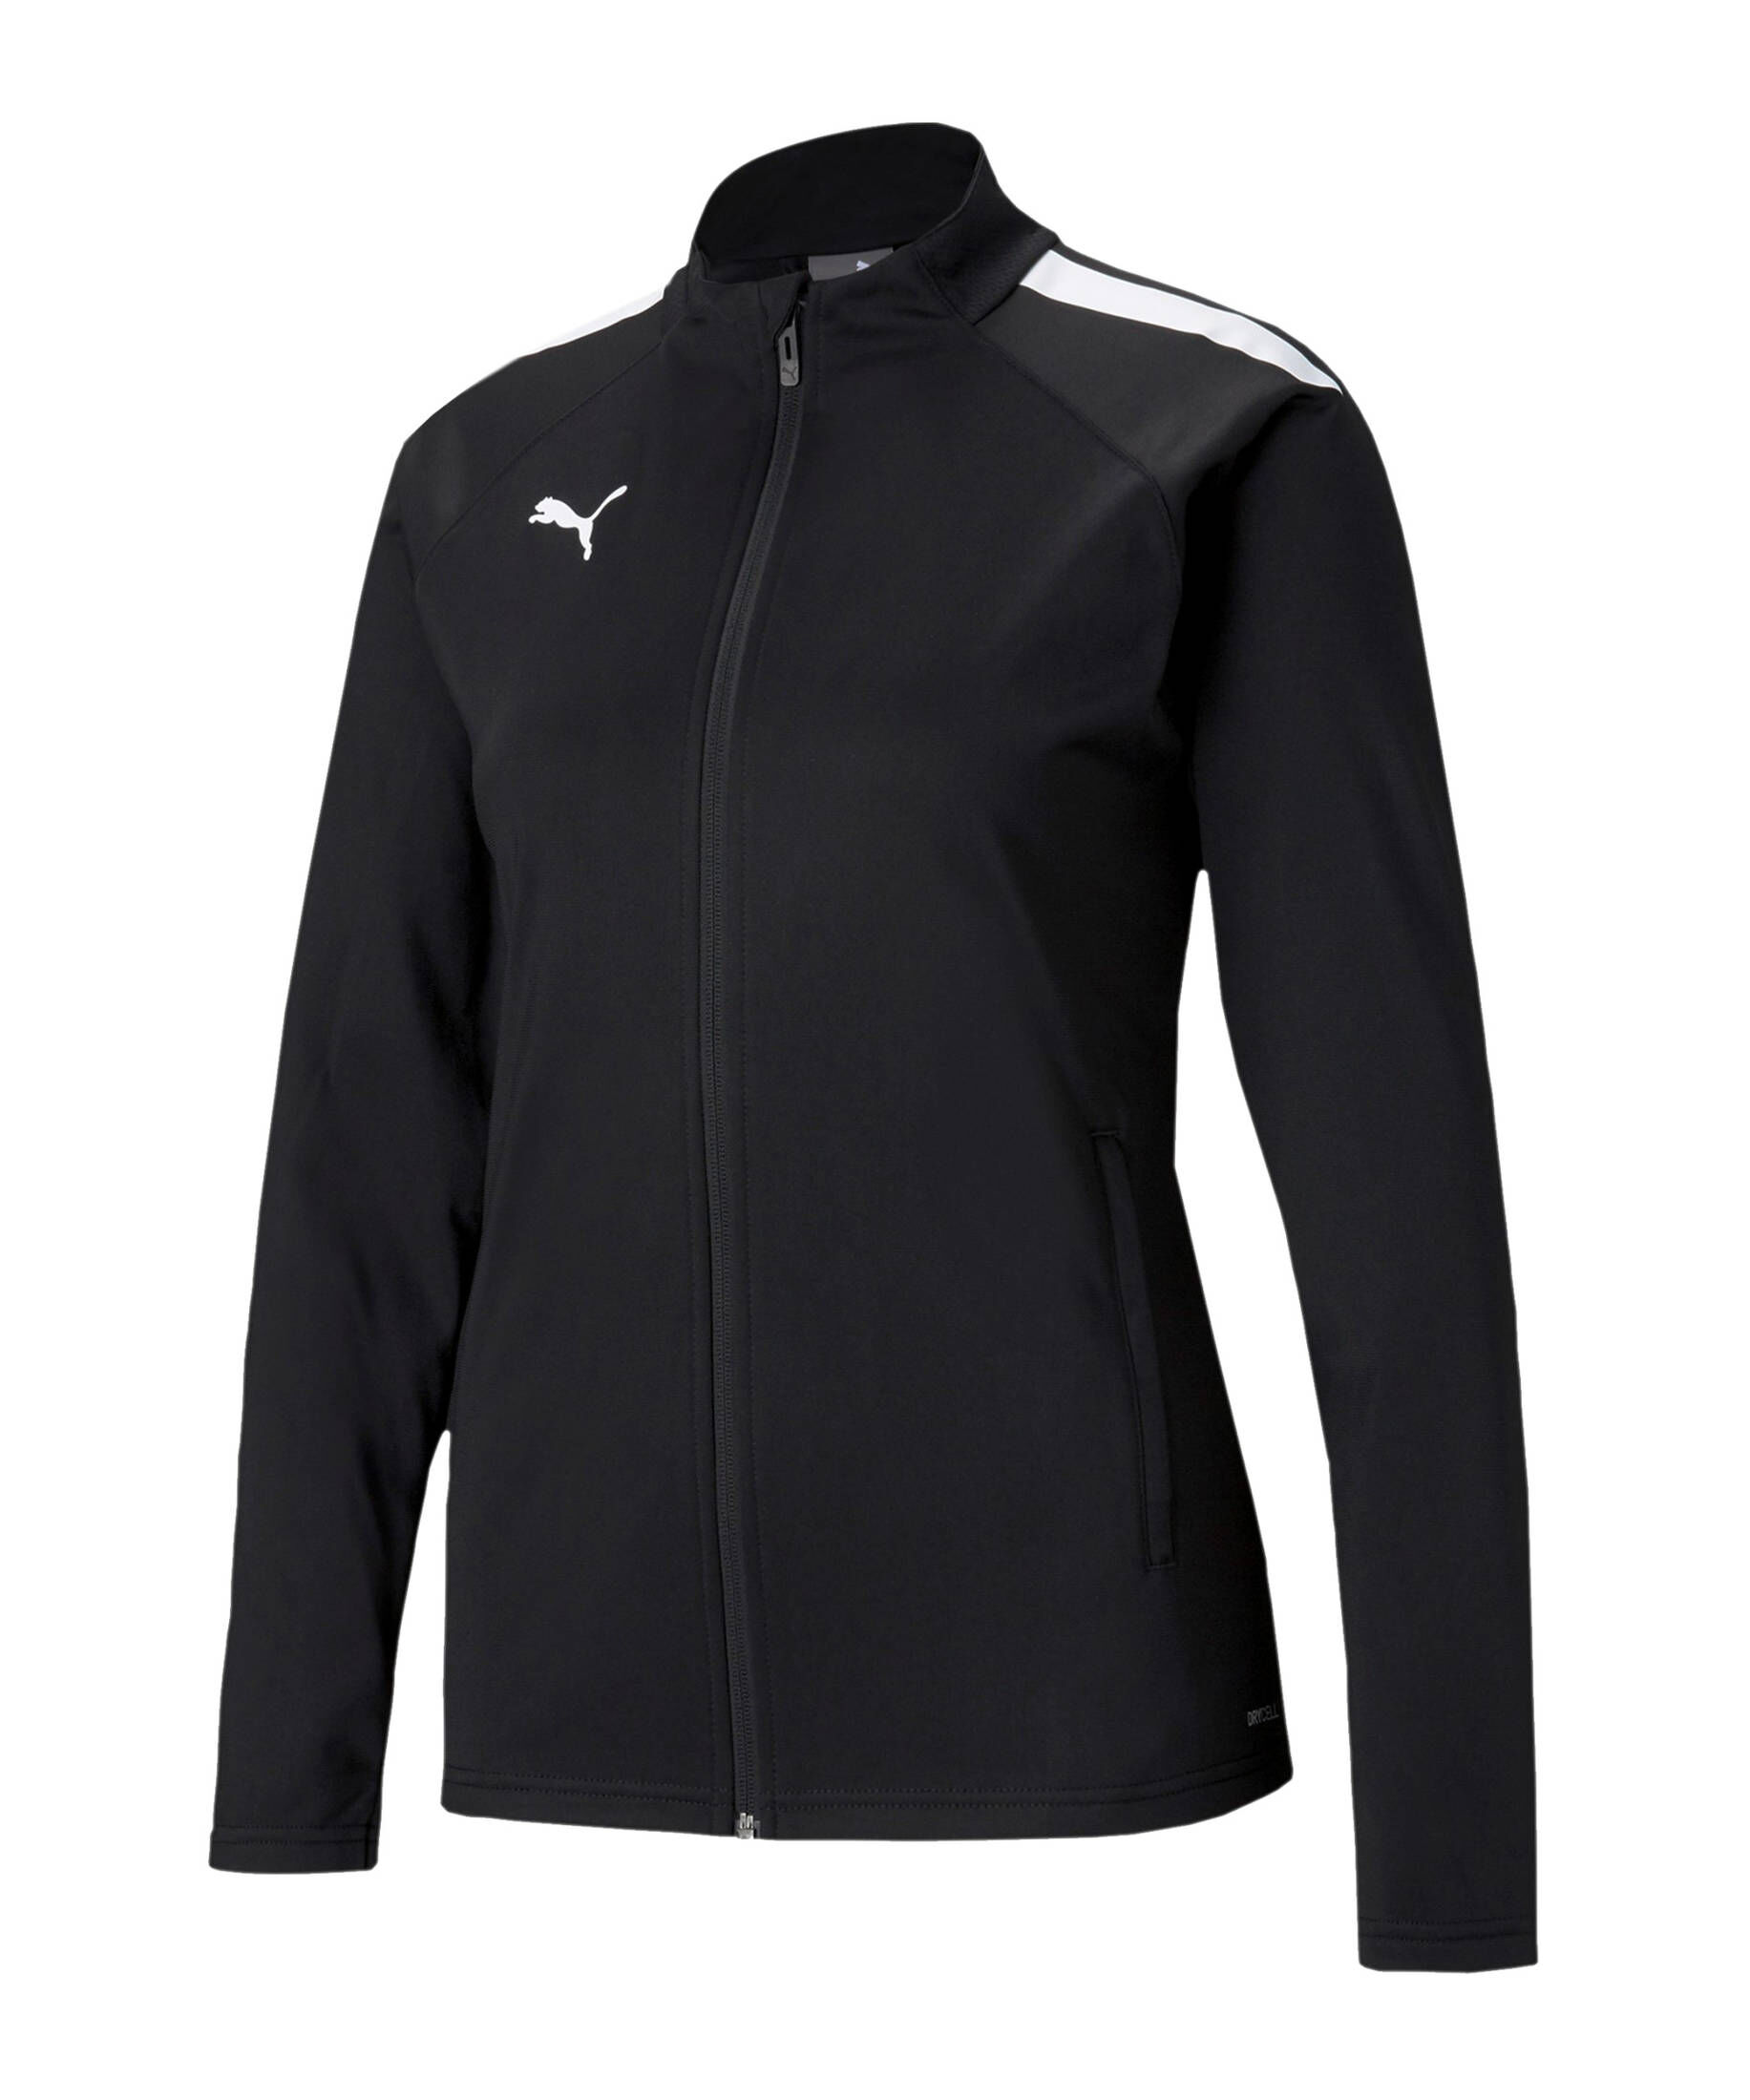 Puma| Damen Fußball - Teamsport Textil - Jacken teamLIGA Trainingsjacke Damen